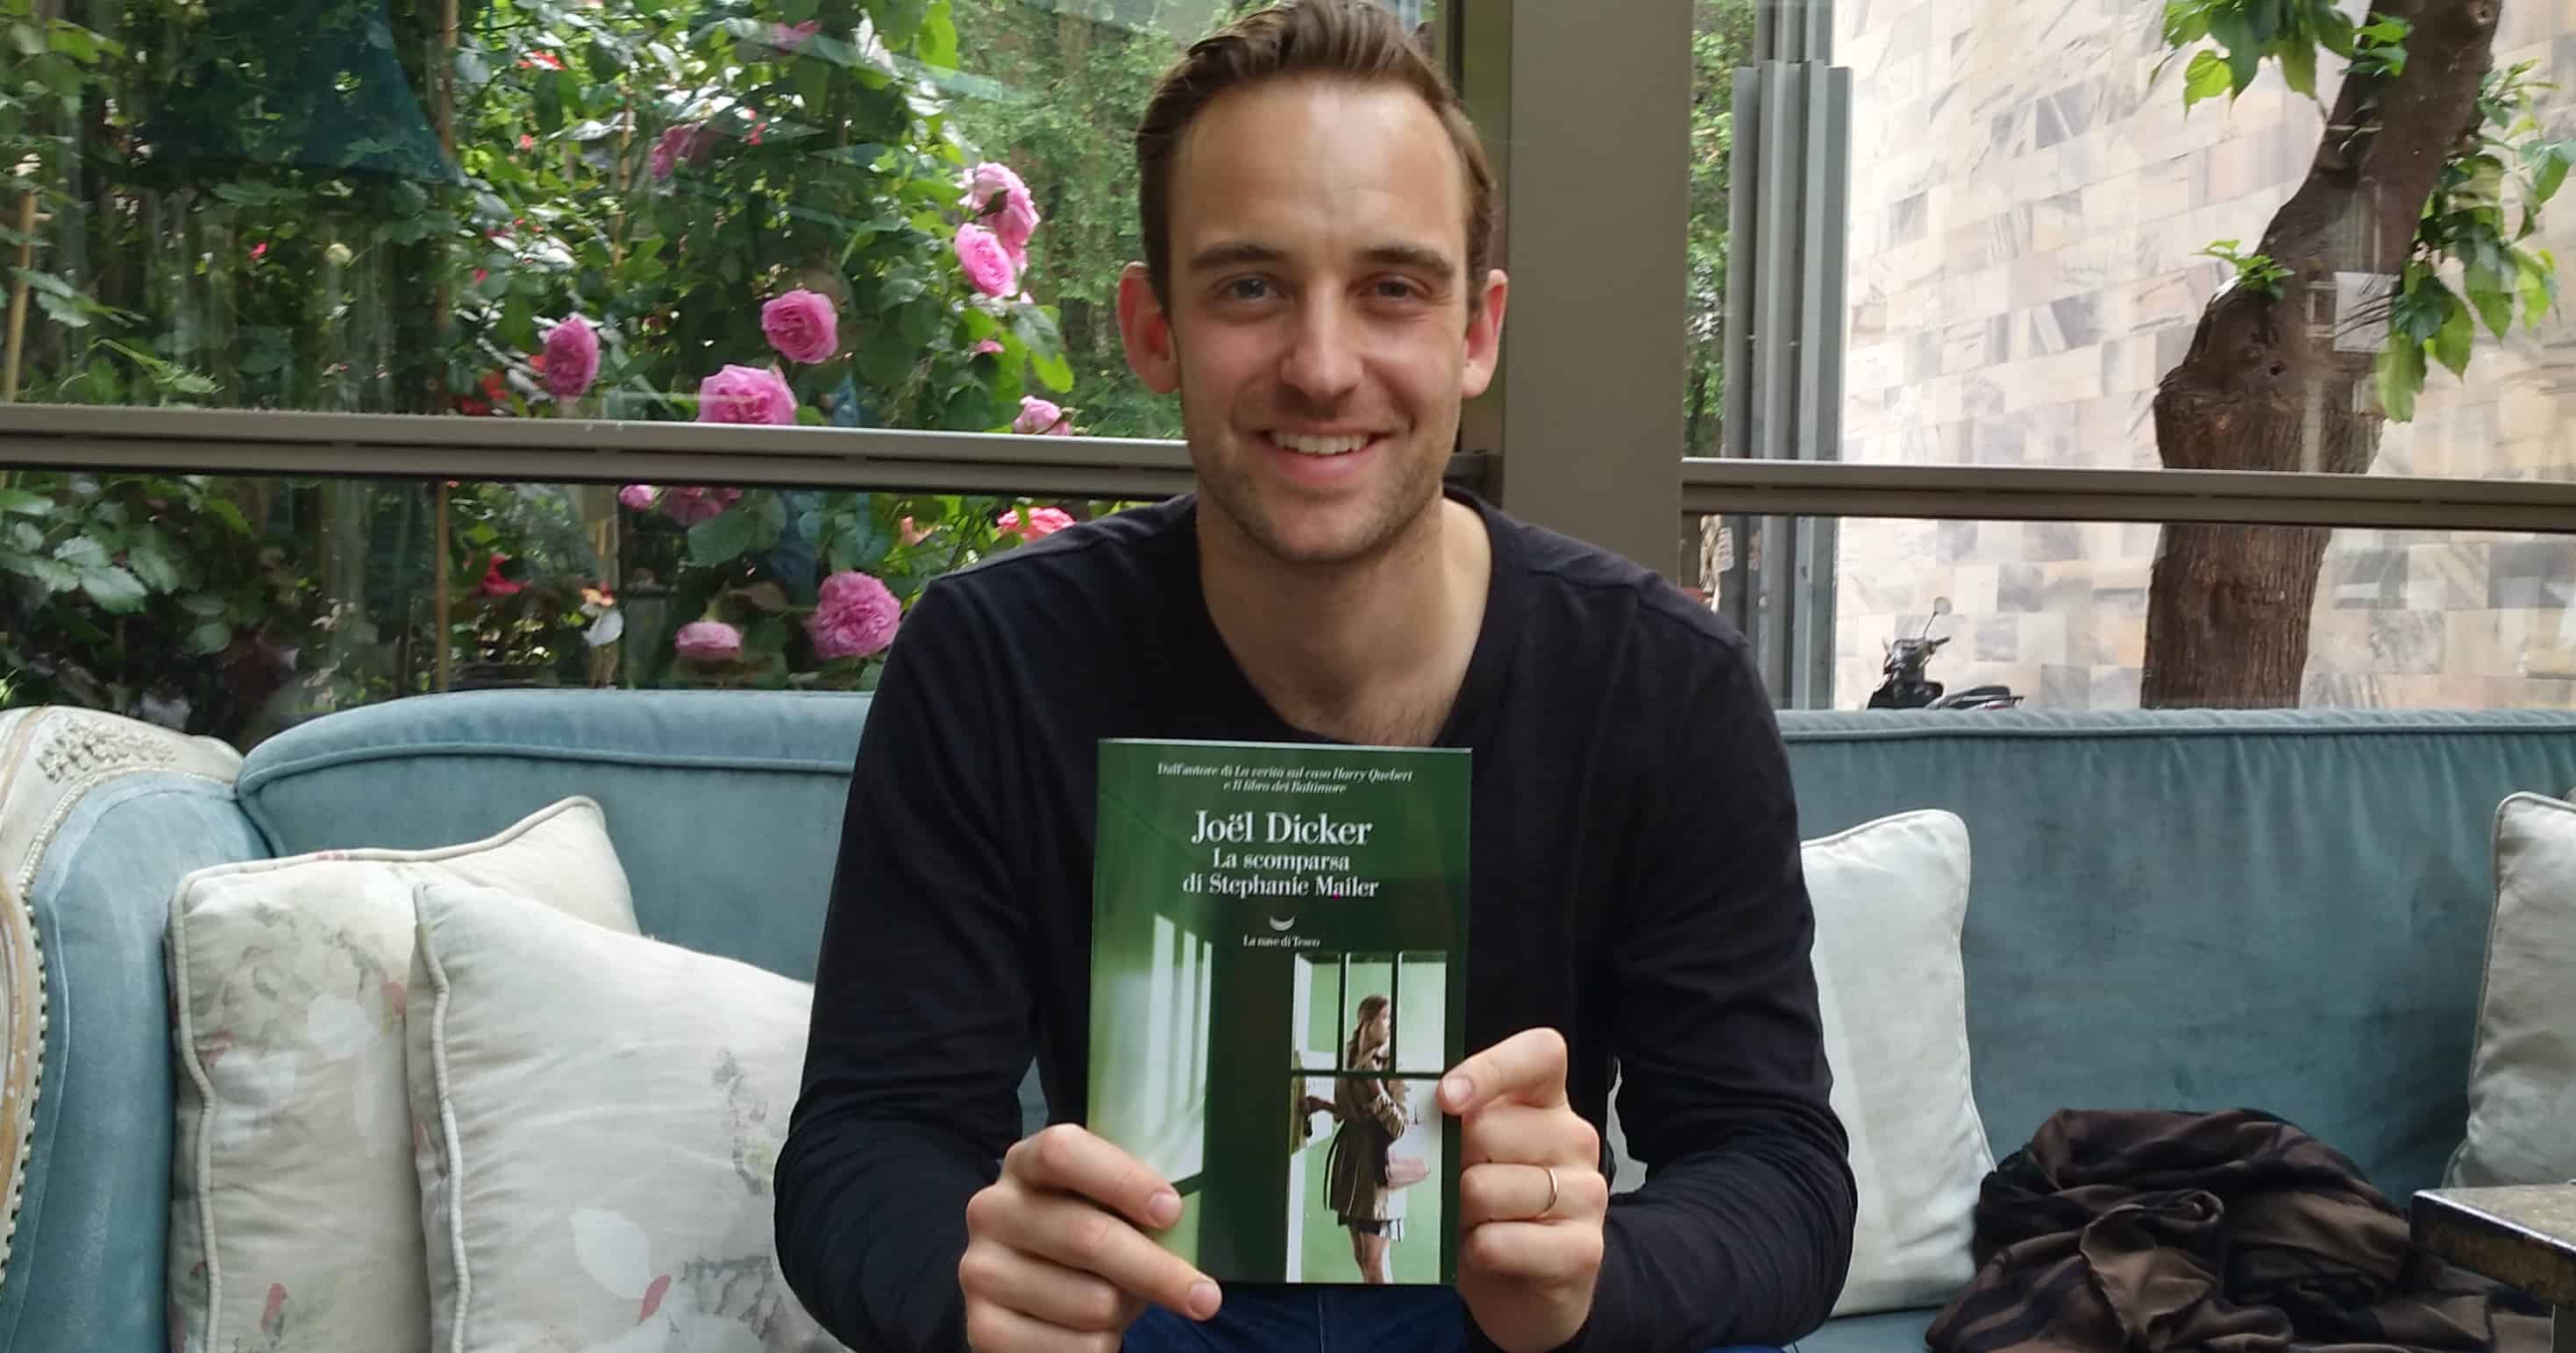 L’intervista video a Joël Dicker: «Il mio libro non esisterebbe senza i librai»